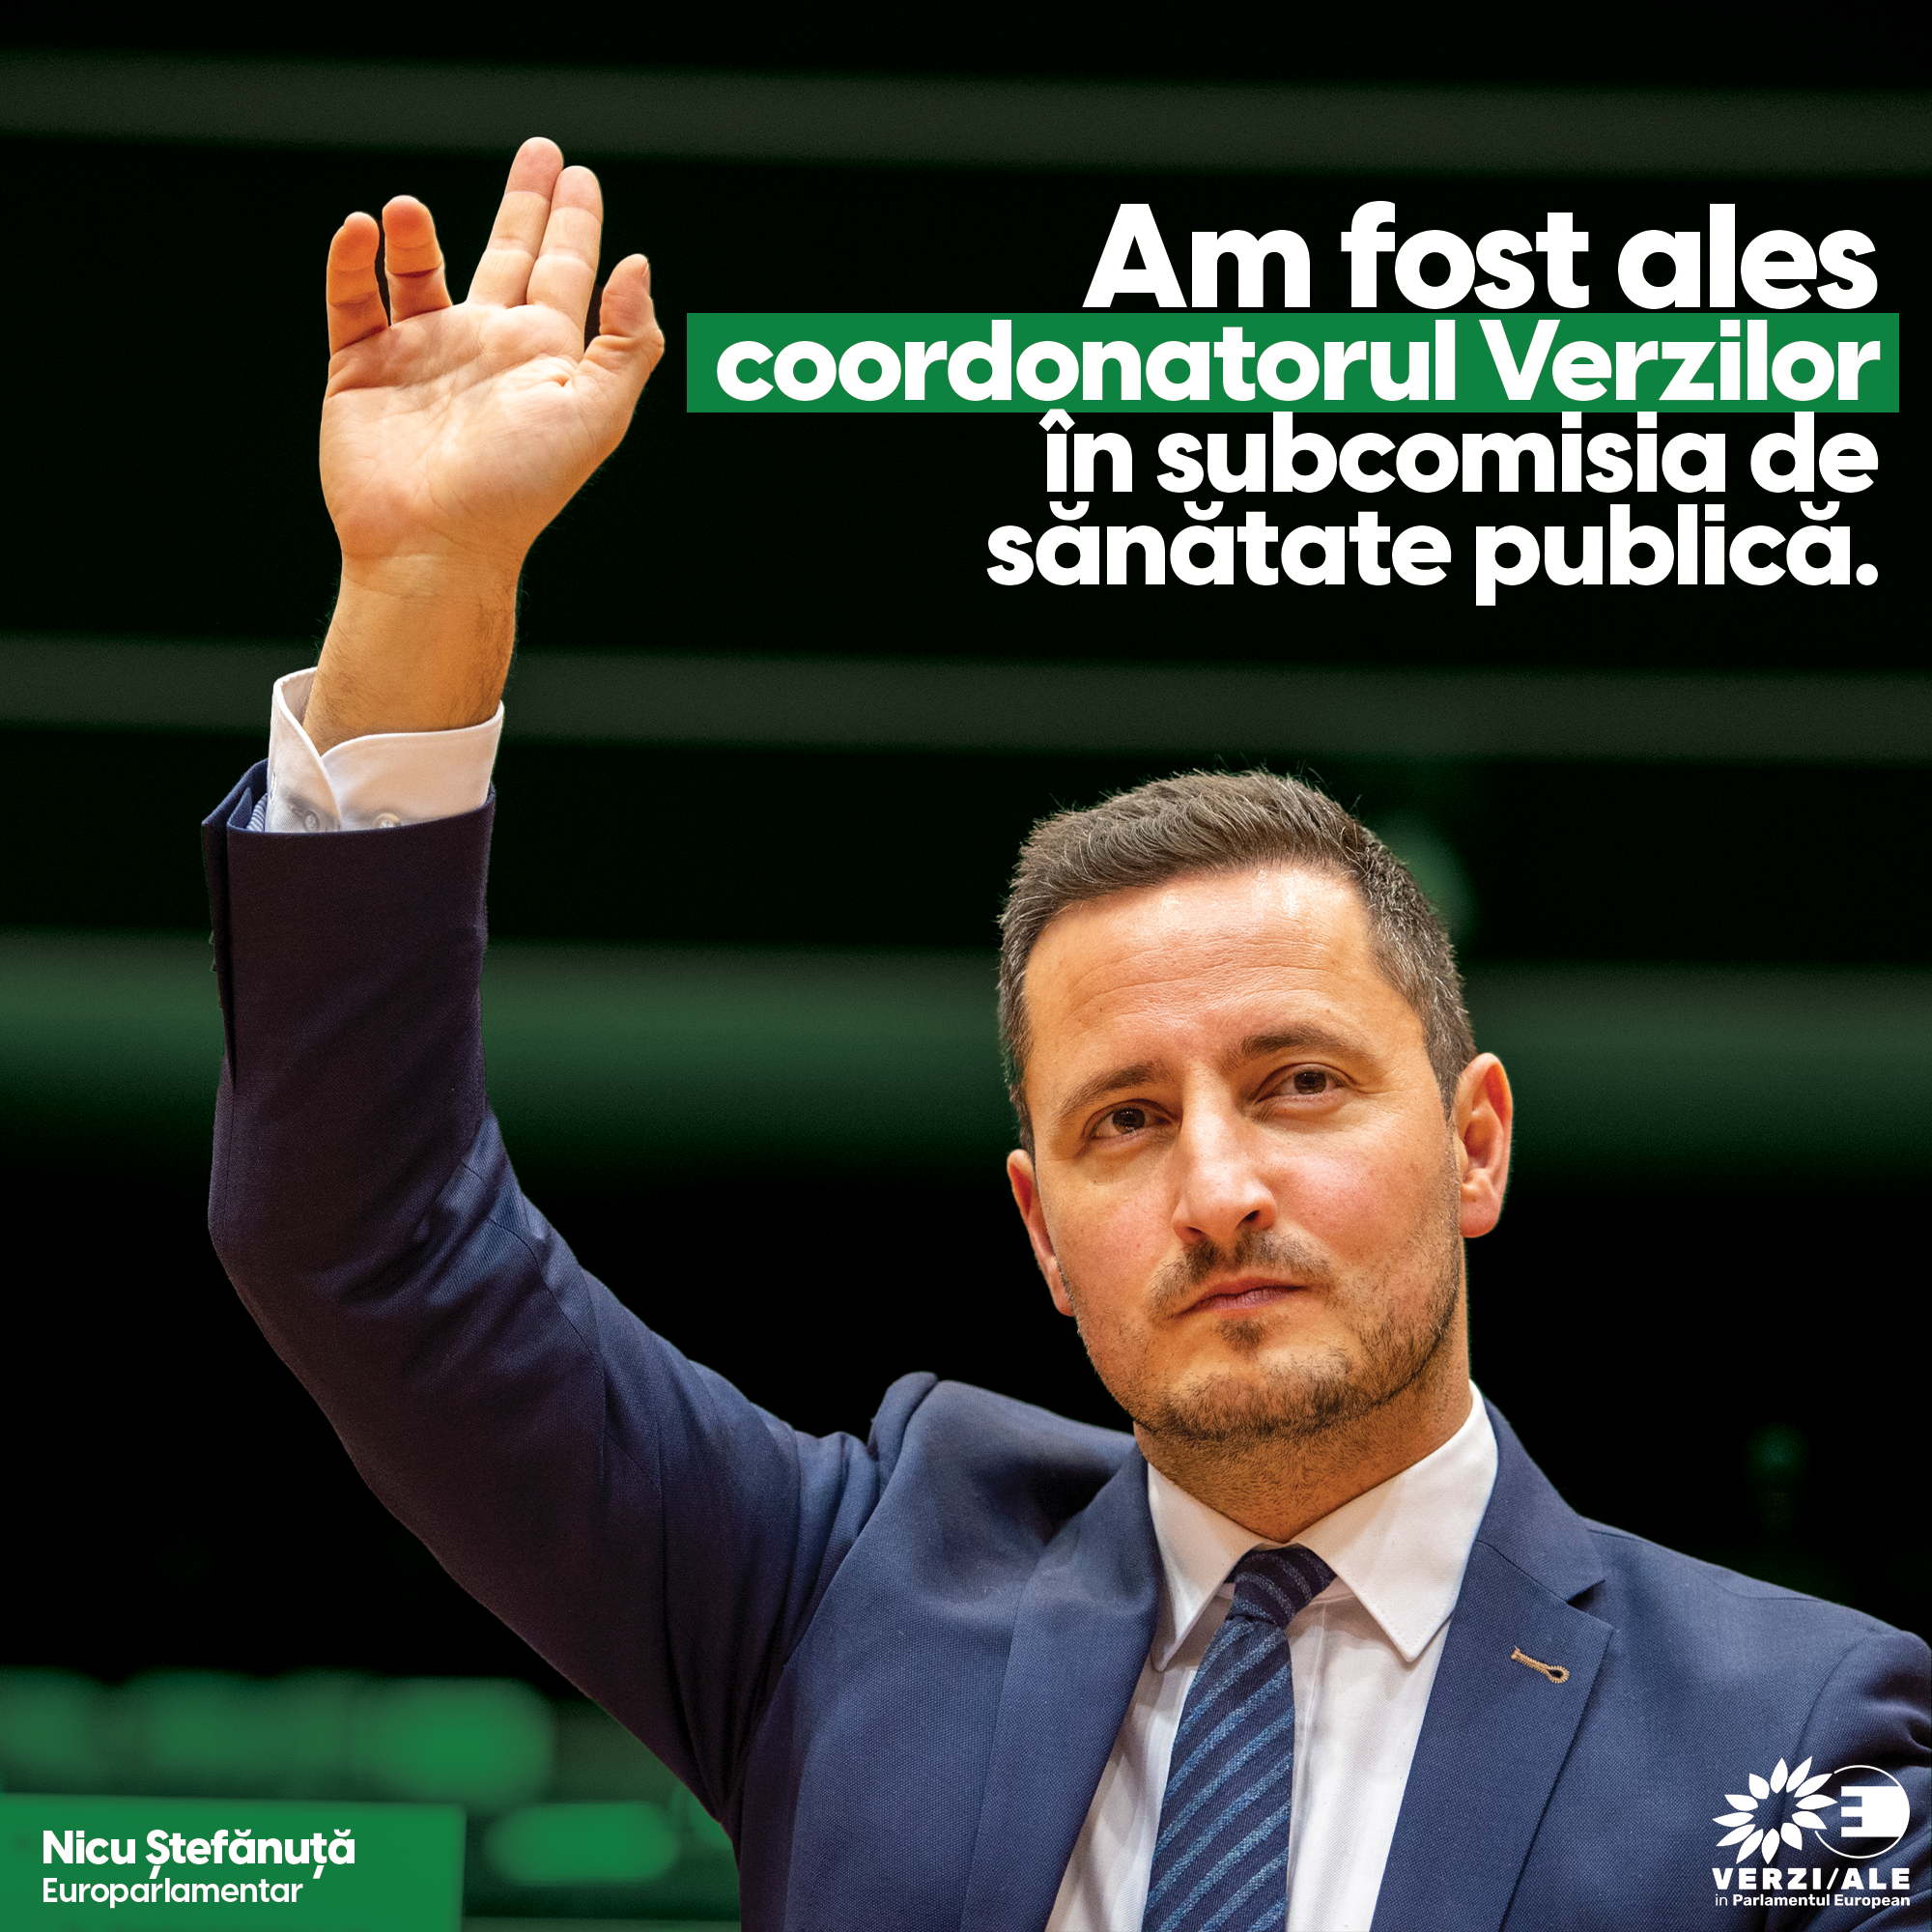 Nicu Ștefănuță a fost ales coordonatorul Grupului Verzilor în Subcomisia pentru Sănătate Publică a Parlamentului European